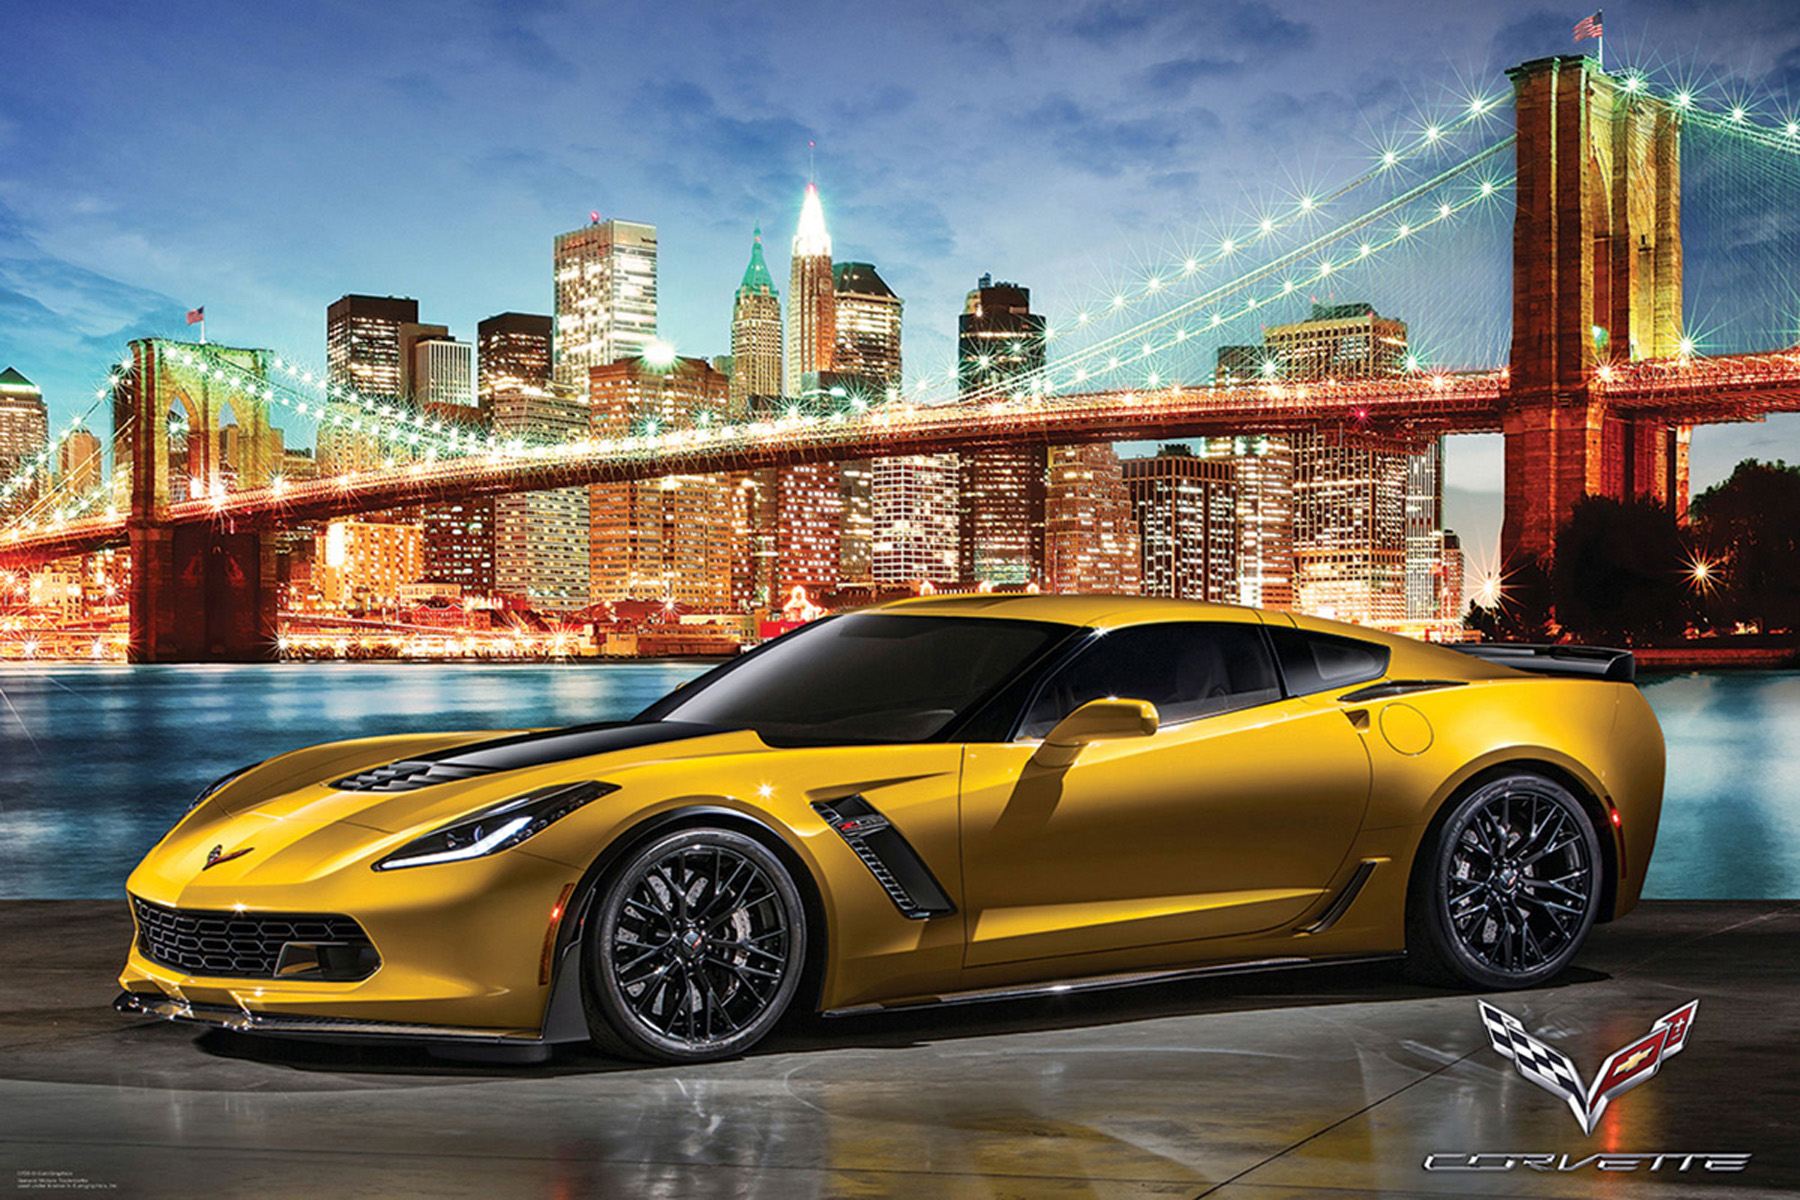 Corvette - Z06 in New York